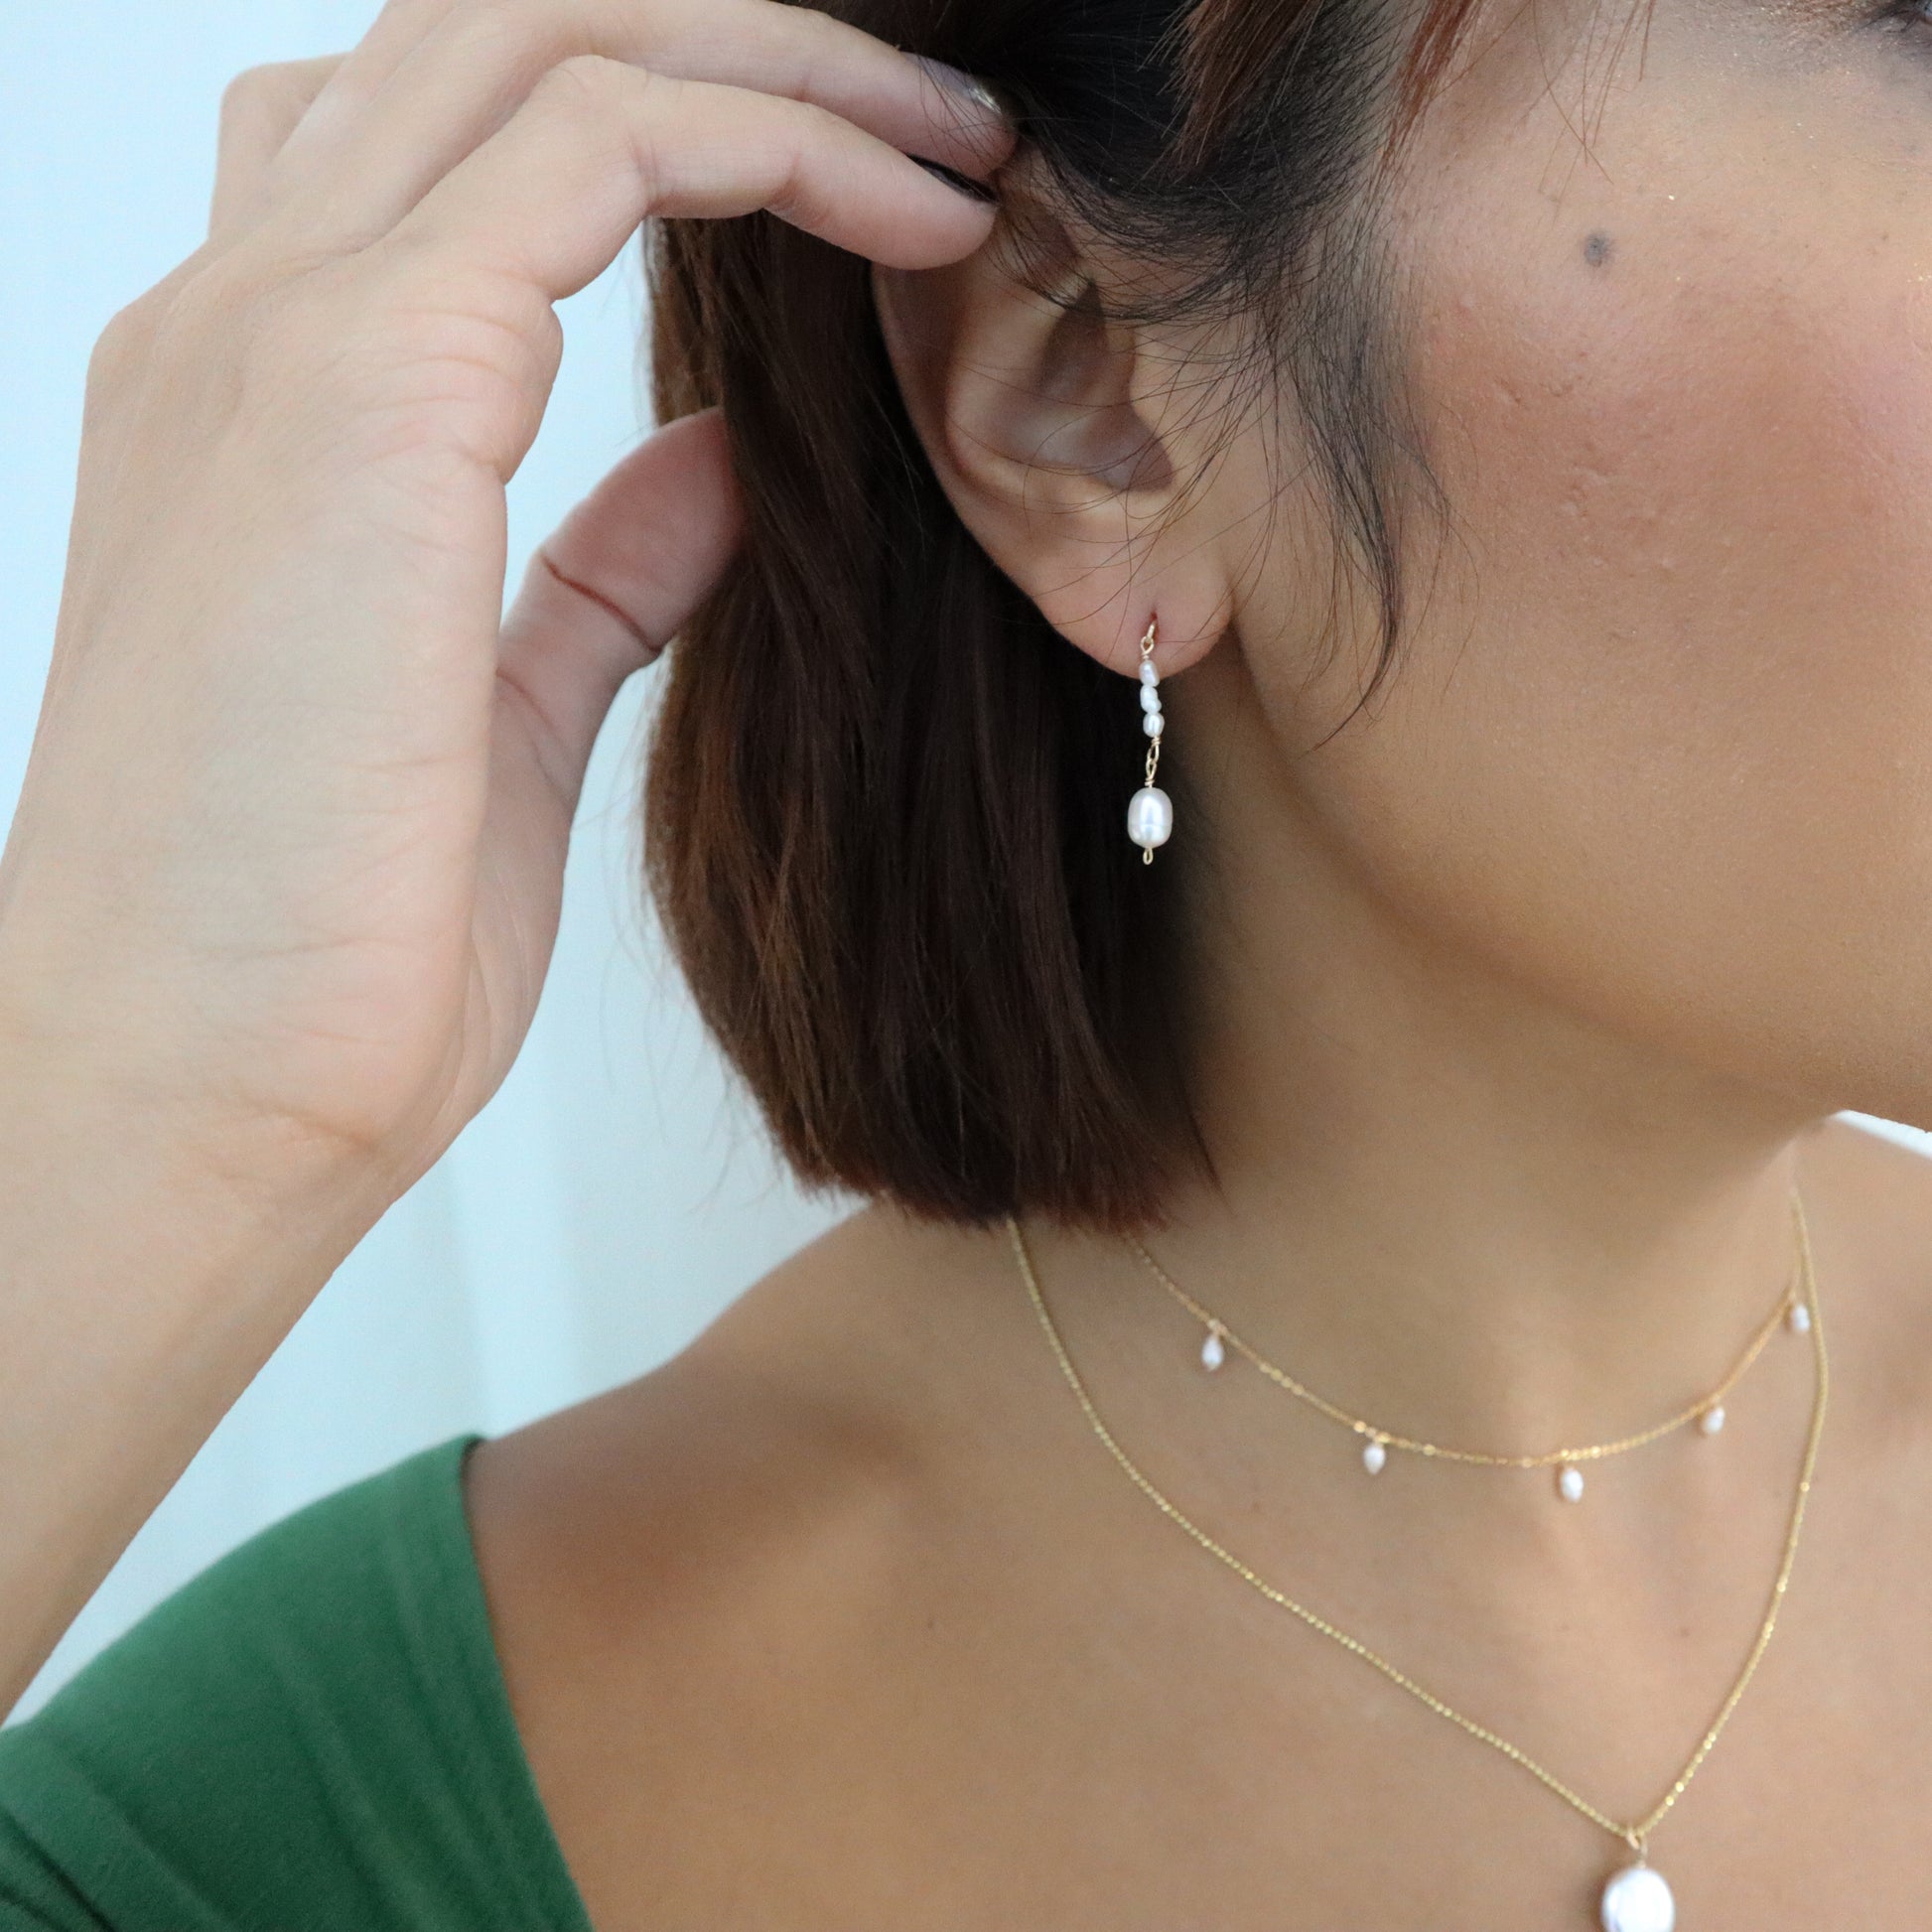 Roop Jewelry twinkle earrings in pearl drip. Handmade jewelry in Oakland, Ca.